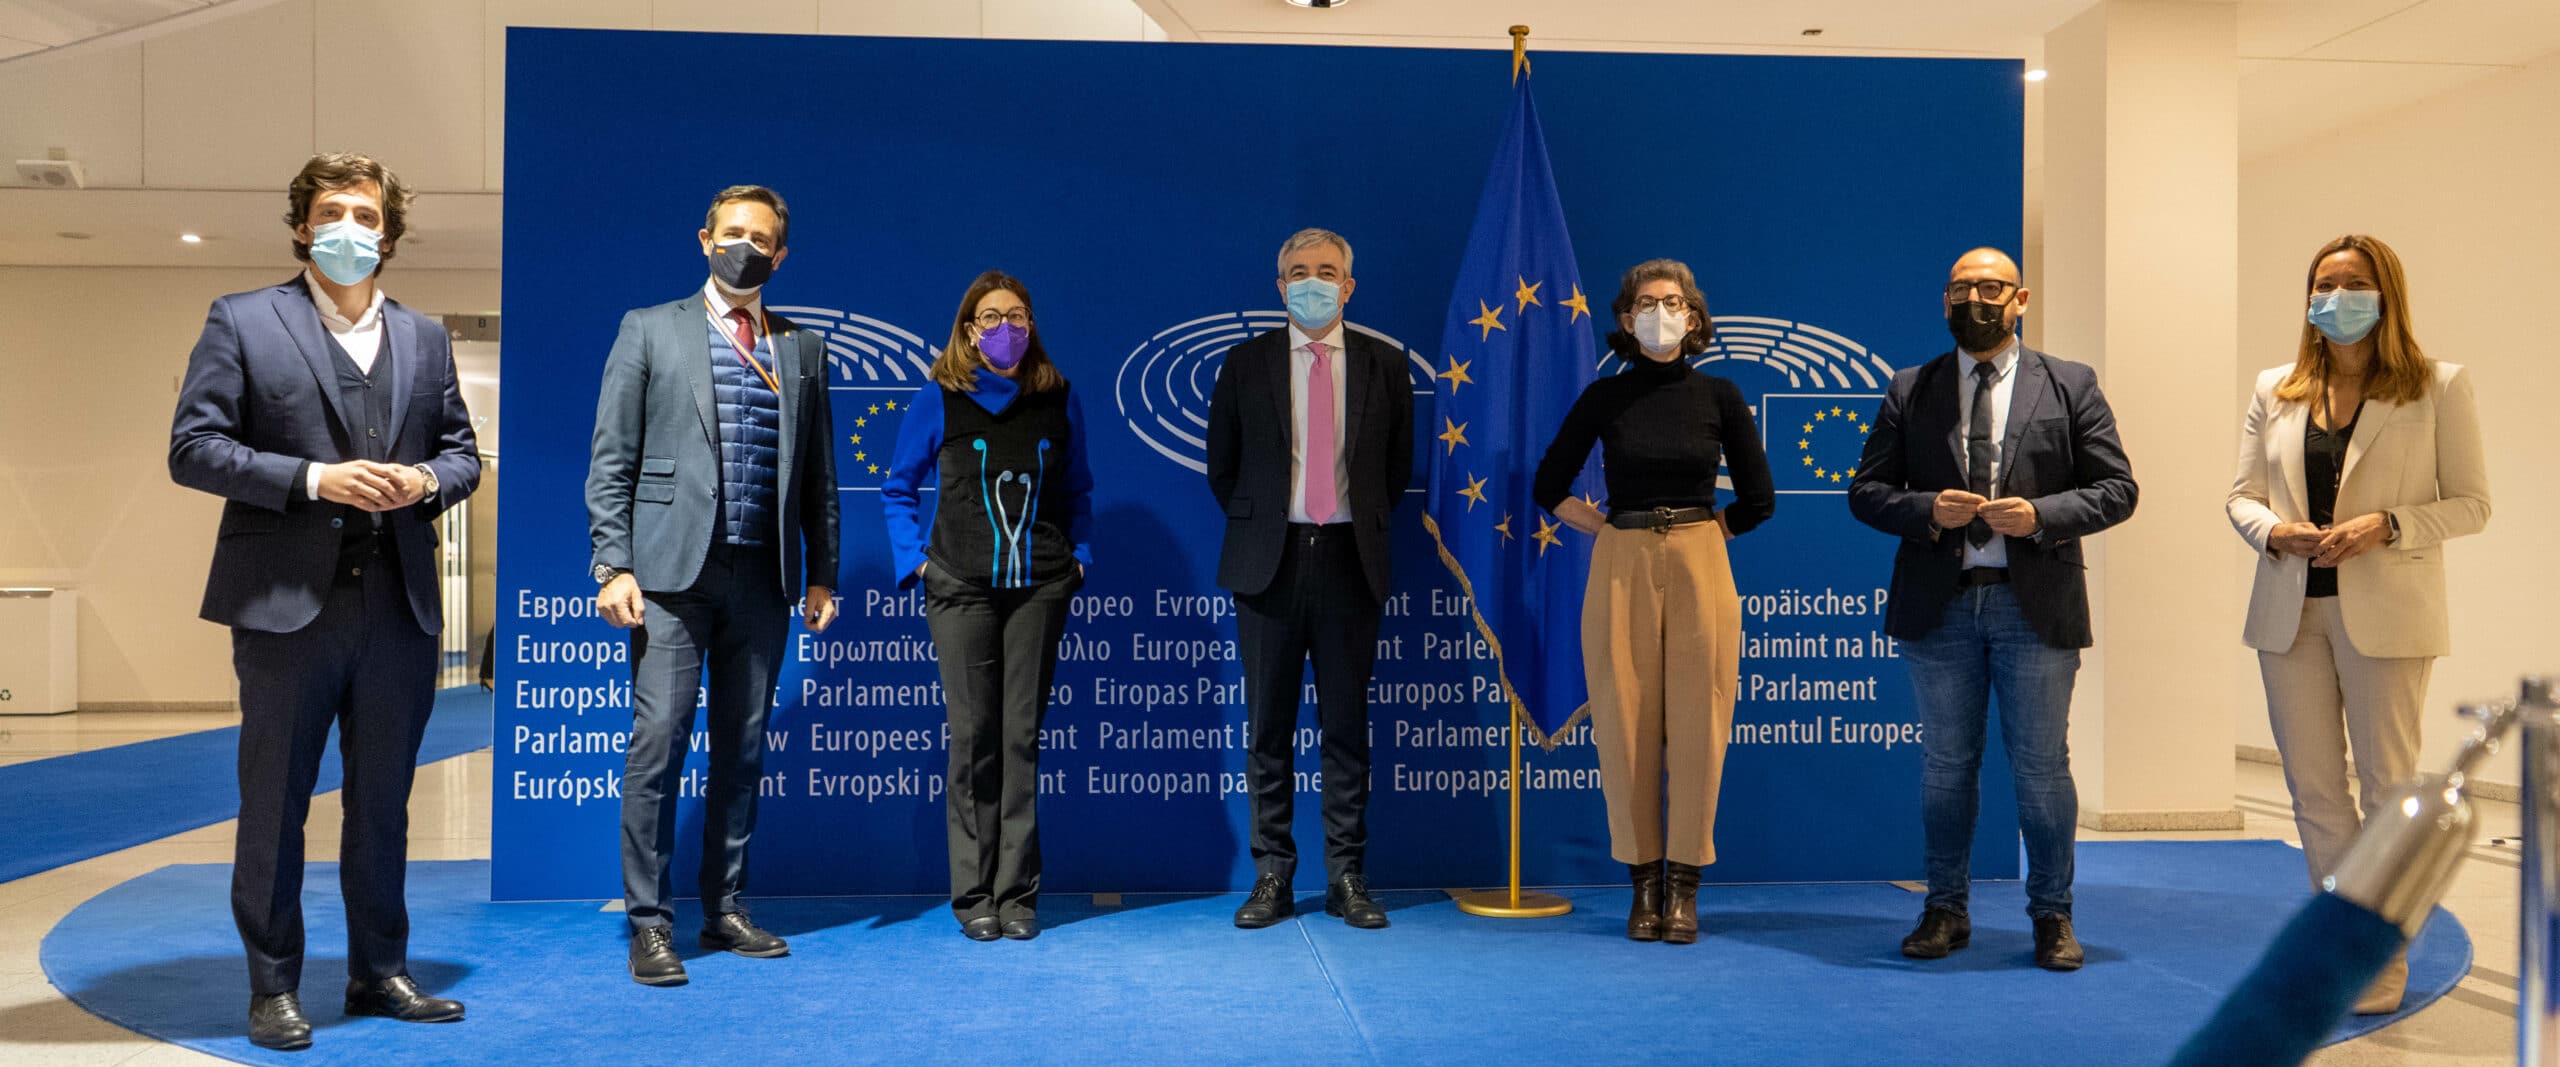 Cs pide a la Comisión Europea que investigue la discriminación a quien quiere estudiar en español en Cataluña tras el acoso a la familia de Canet de Mar